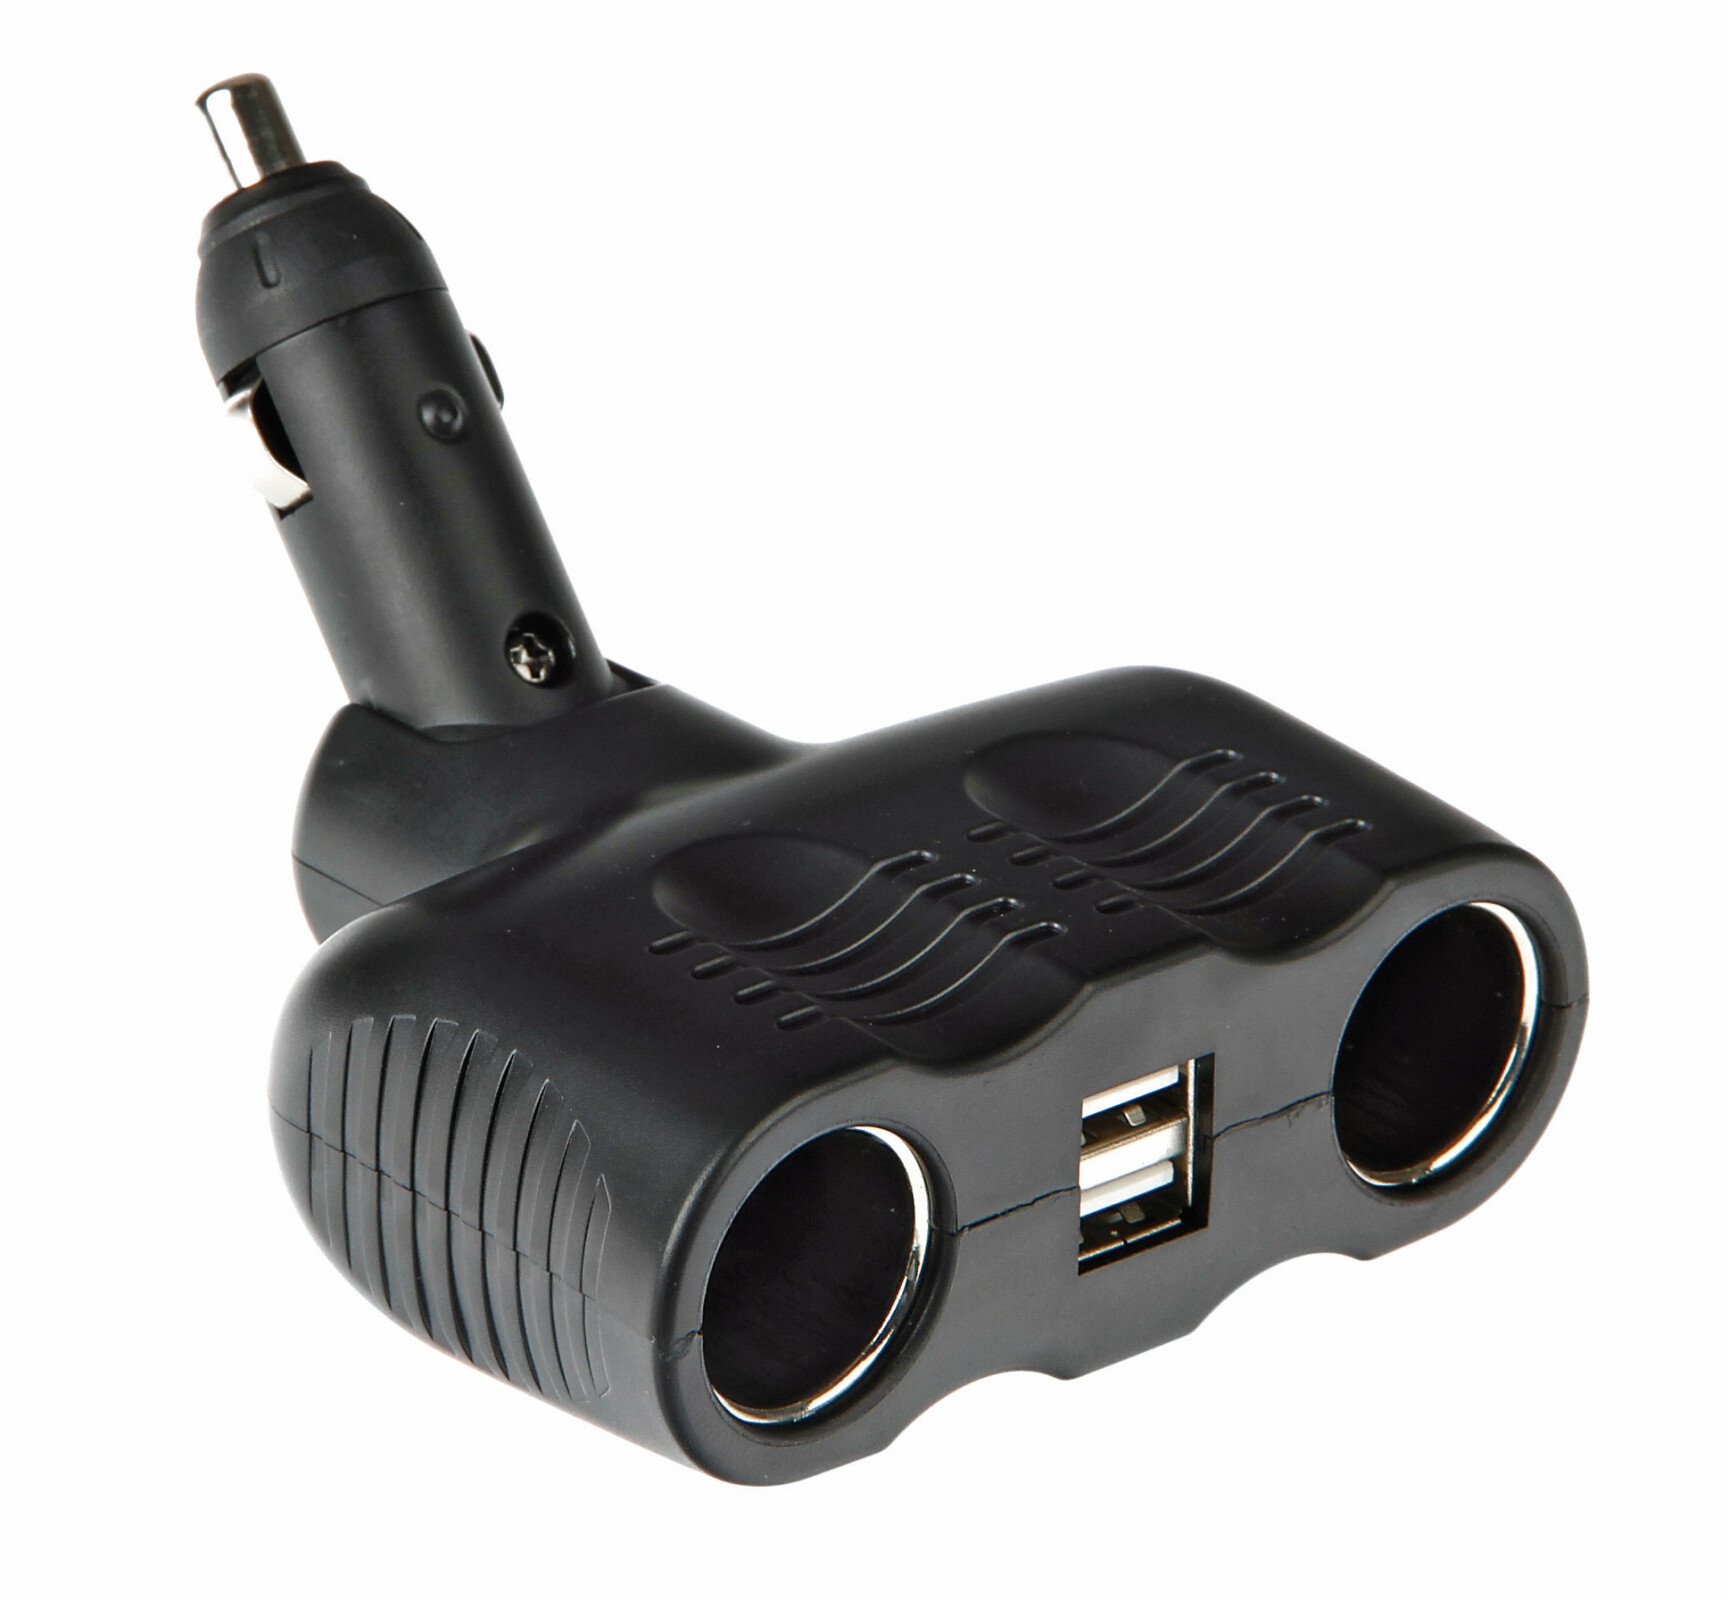 Duo-4, double socket 12/24V + USB thumb